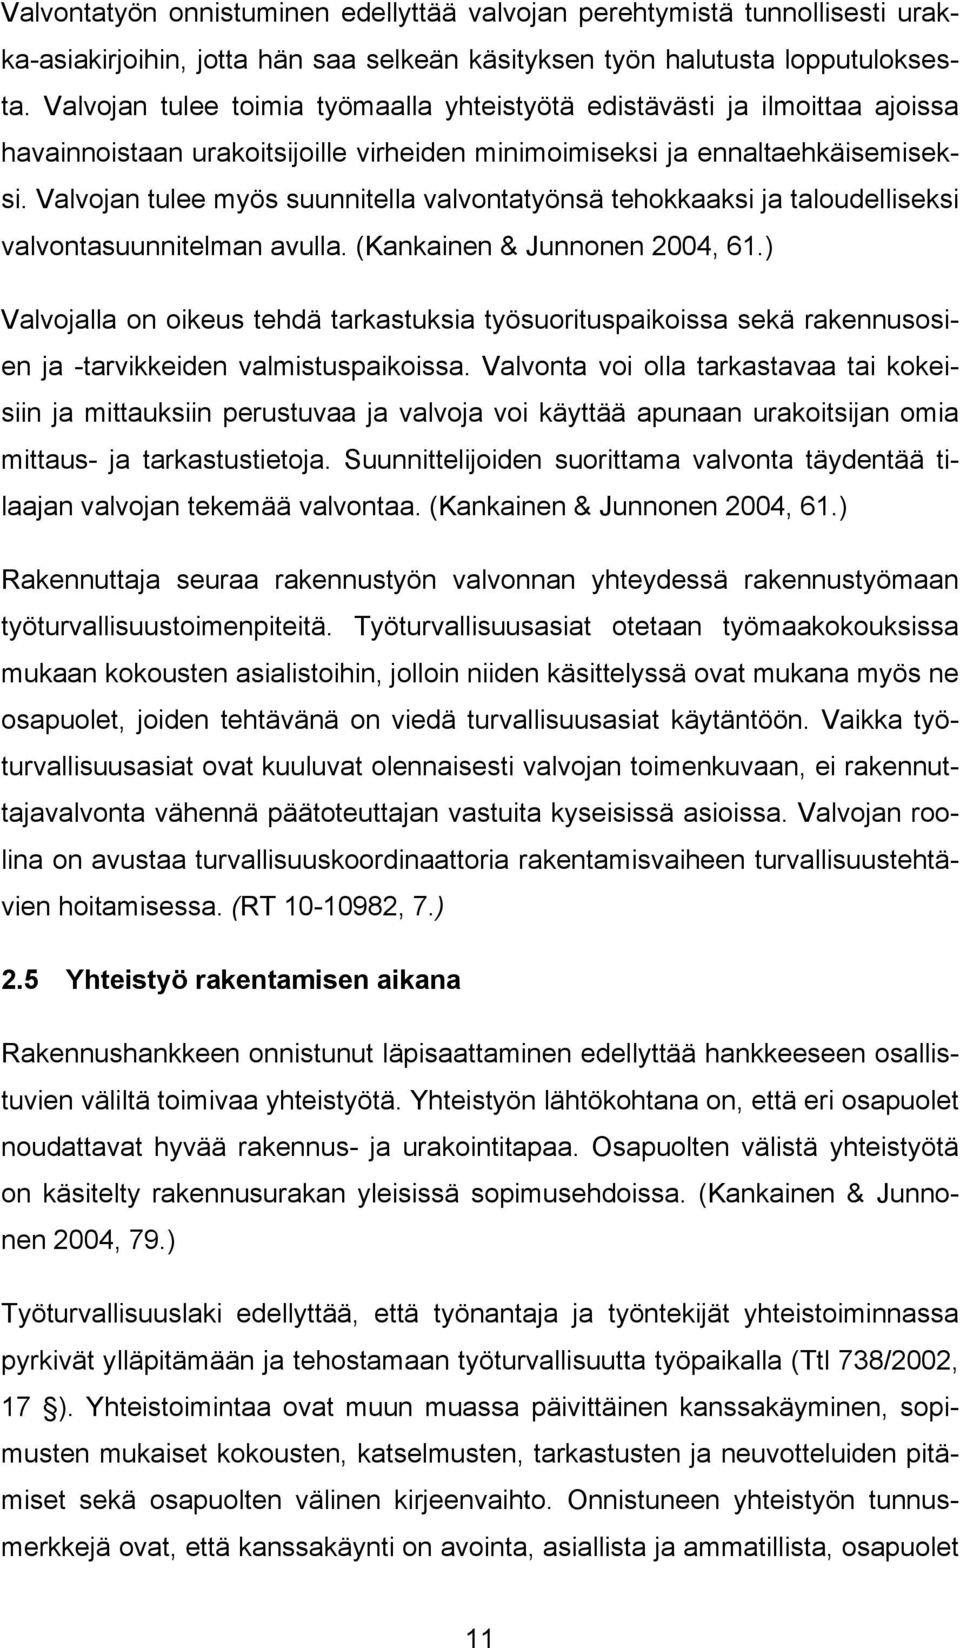 Valvojan tulee myös suunnitella valvontatyönsä tehokkaaksi ja taloudelliseksi valvontasuunnitelman avulla. (Kankainen & Junnonen 2004, 61.